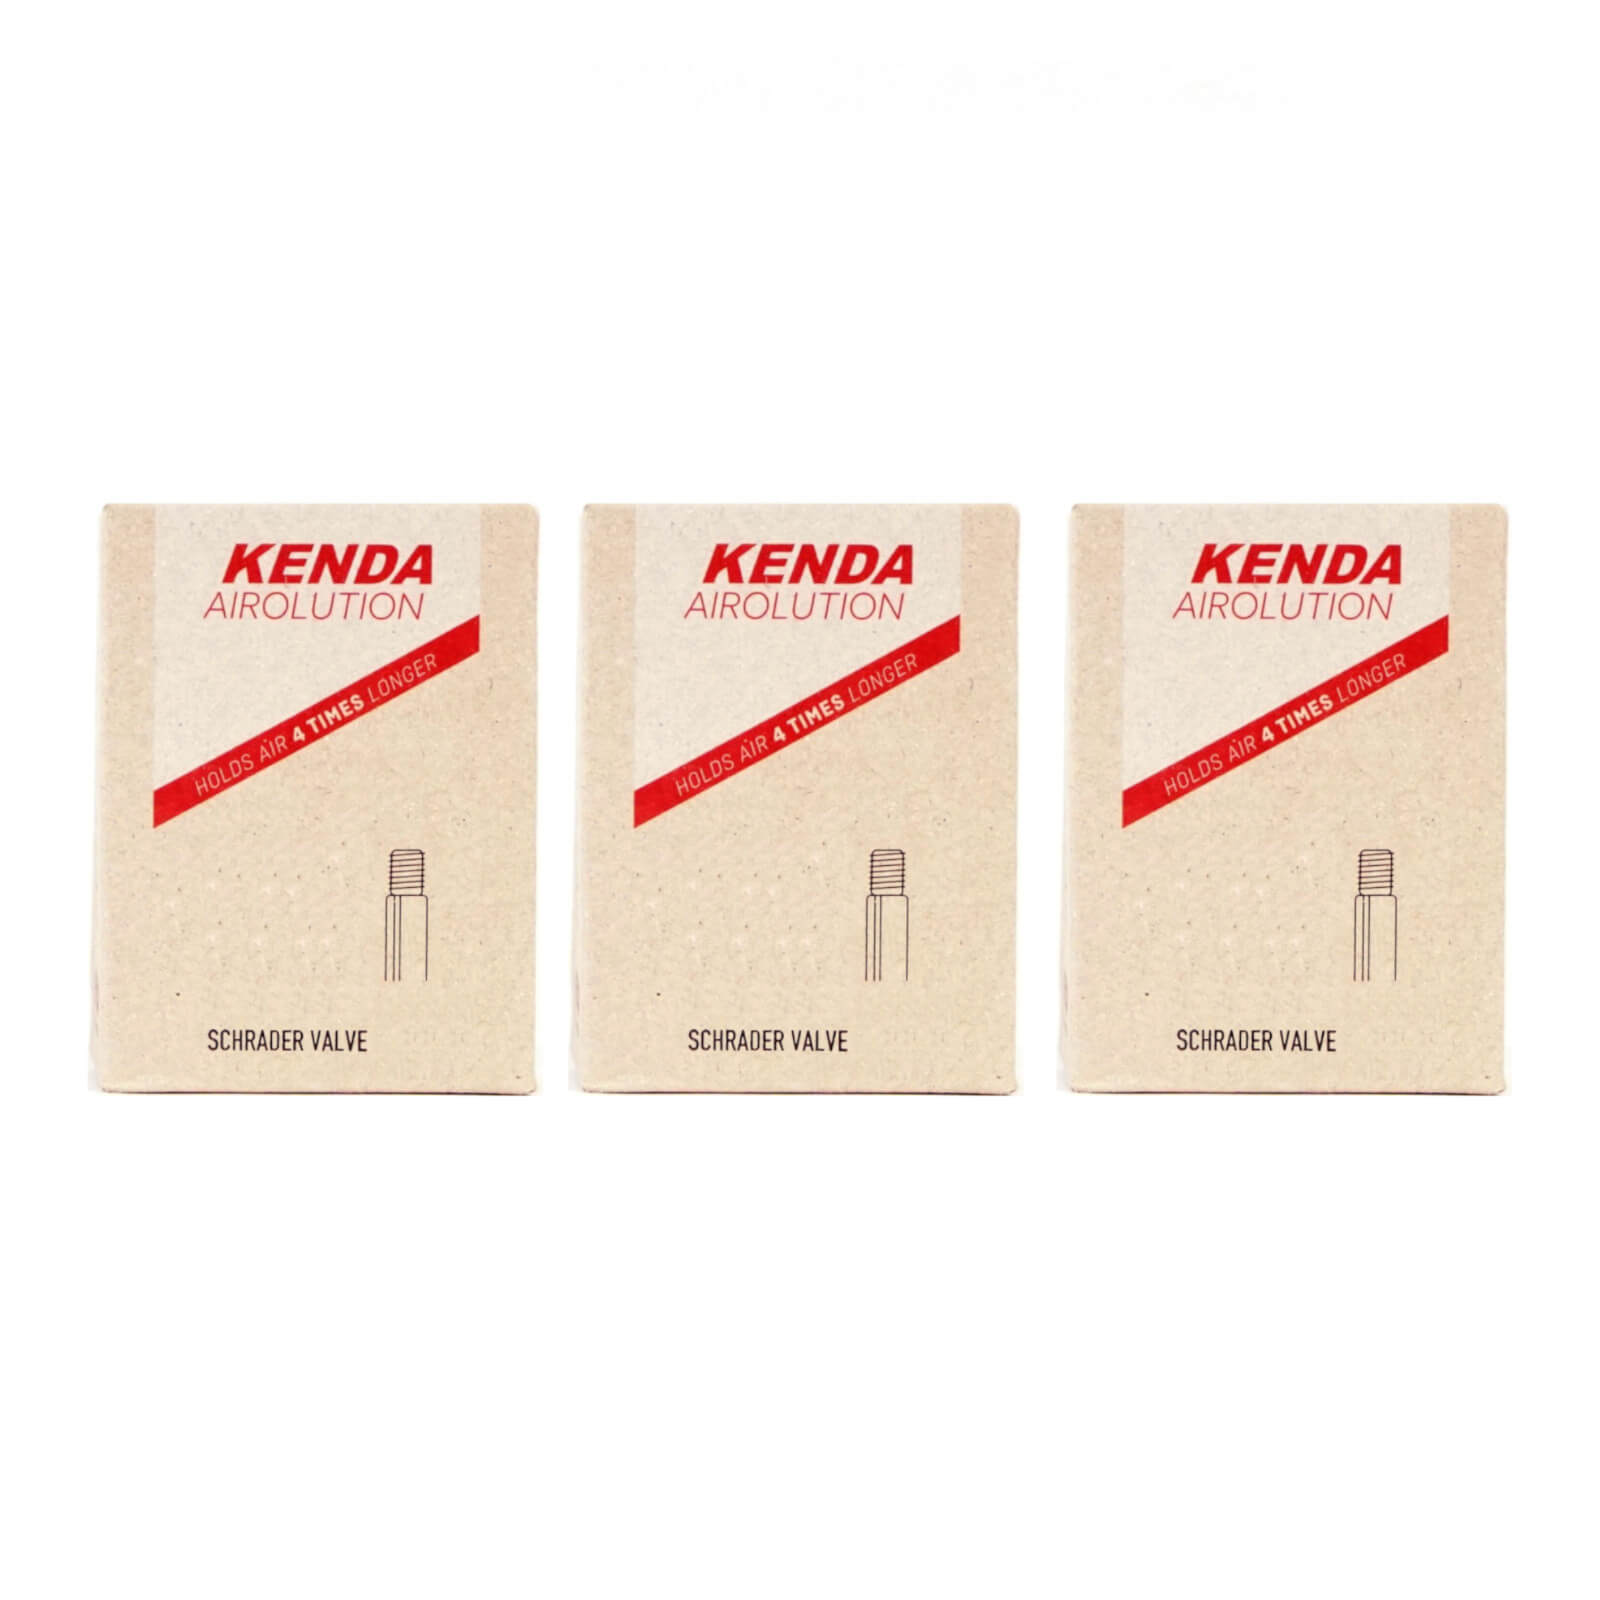 Kenda Airolution 26x2.0-2.4" 26 Inch Schrader Valve Bike Inner Tube Pack of 3